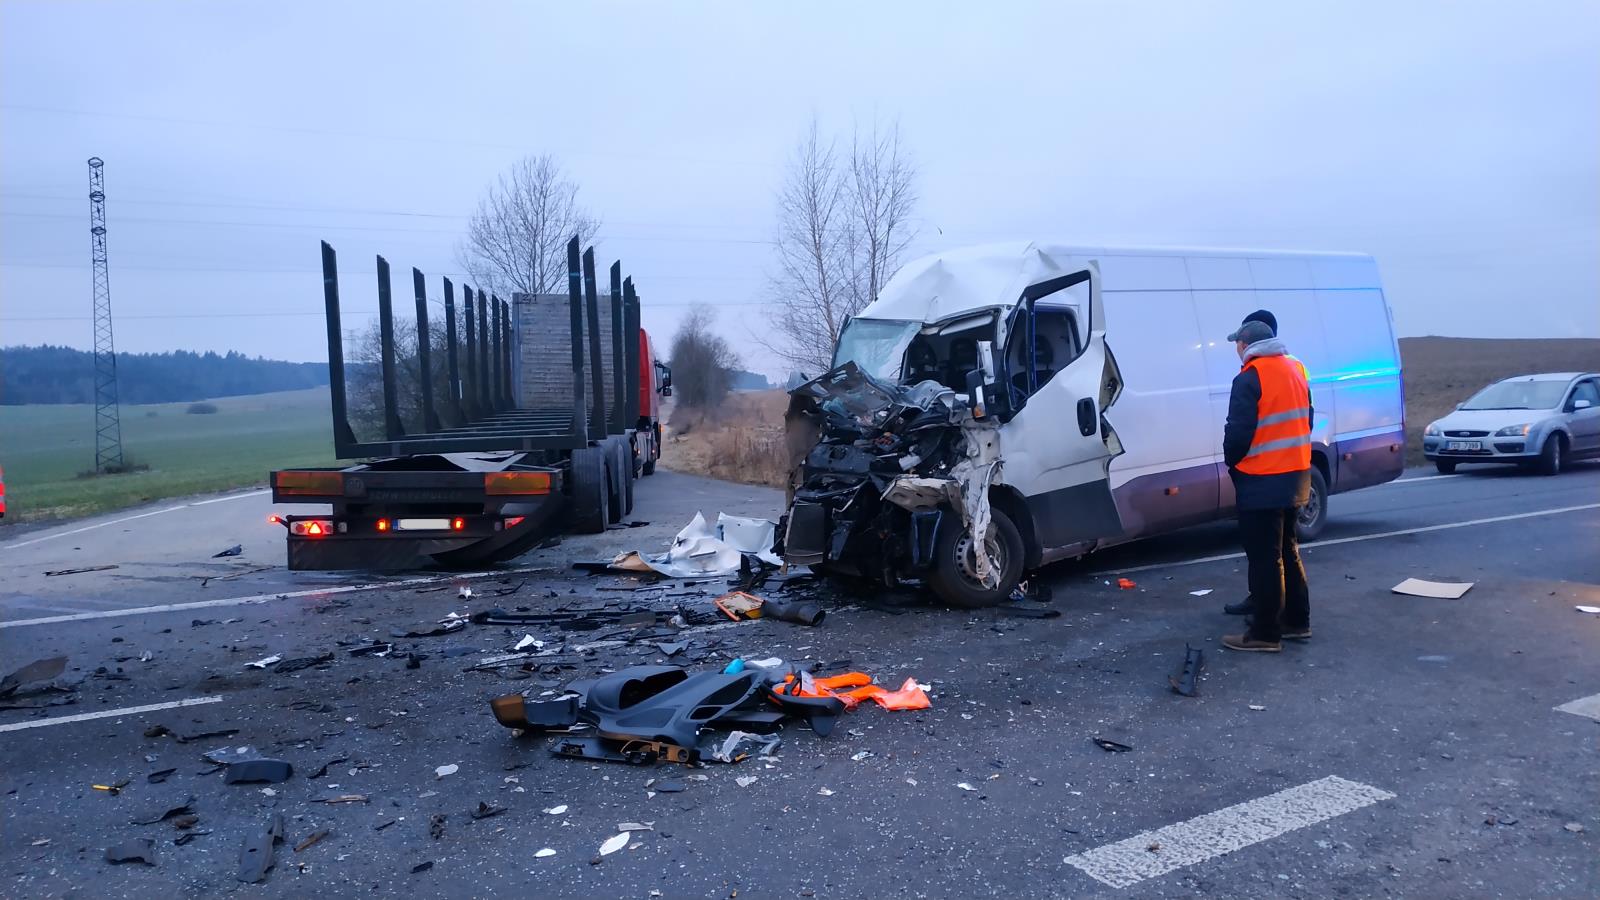 Dopravní nehoda NA a dodávky, Nový Dvůr - 23. 1. 2019 (4).jpg